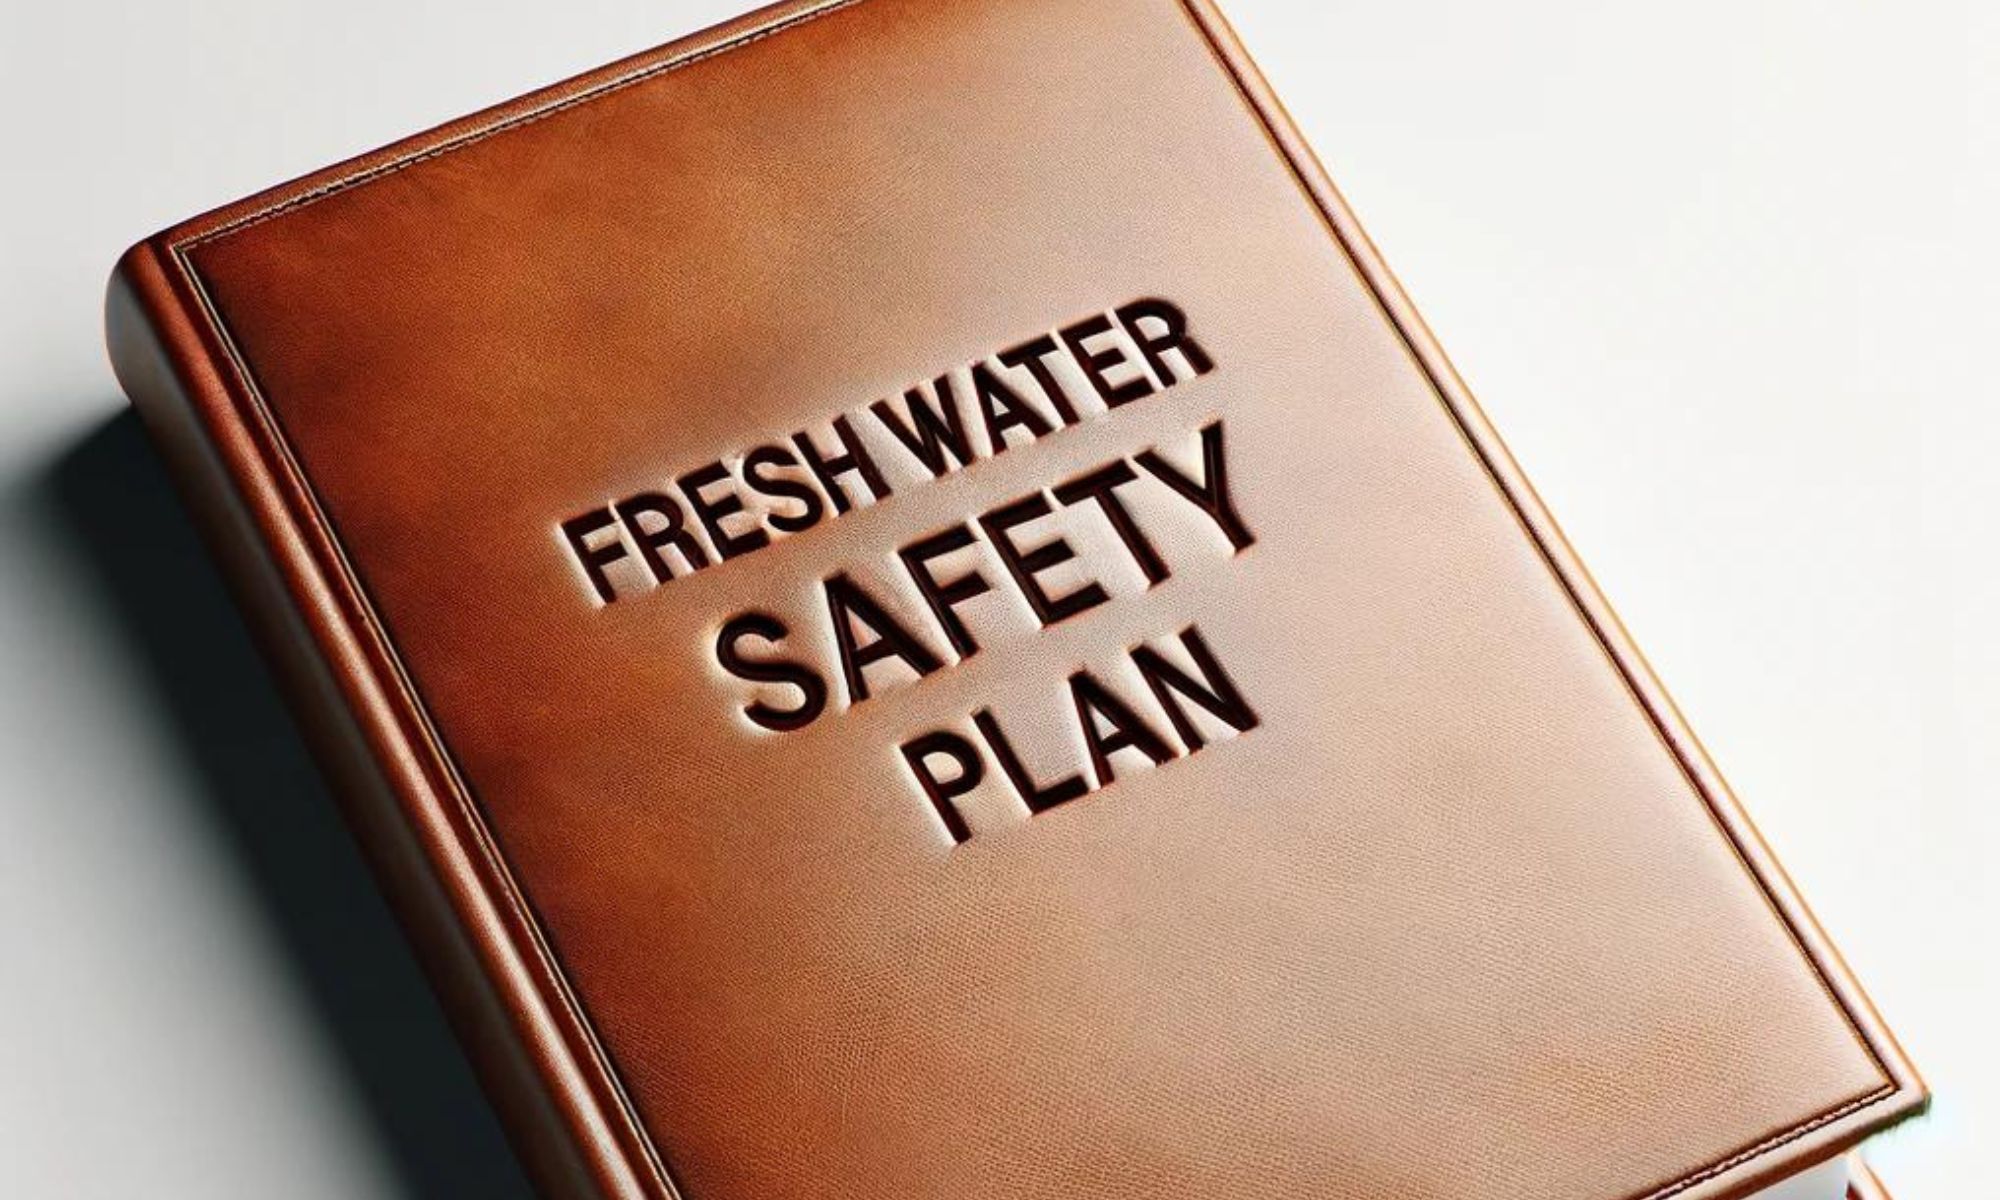 Fresh Water Safety Plan